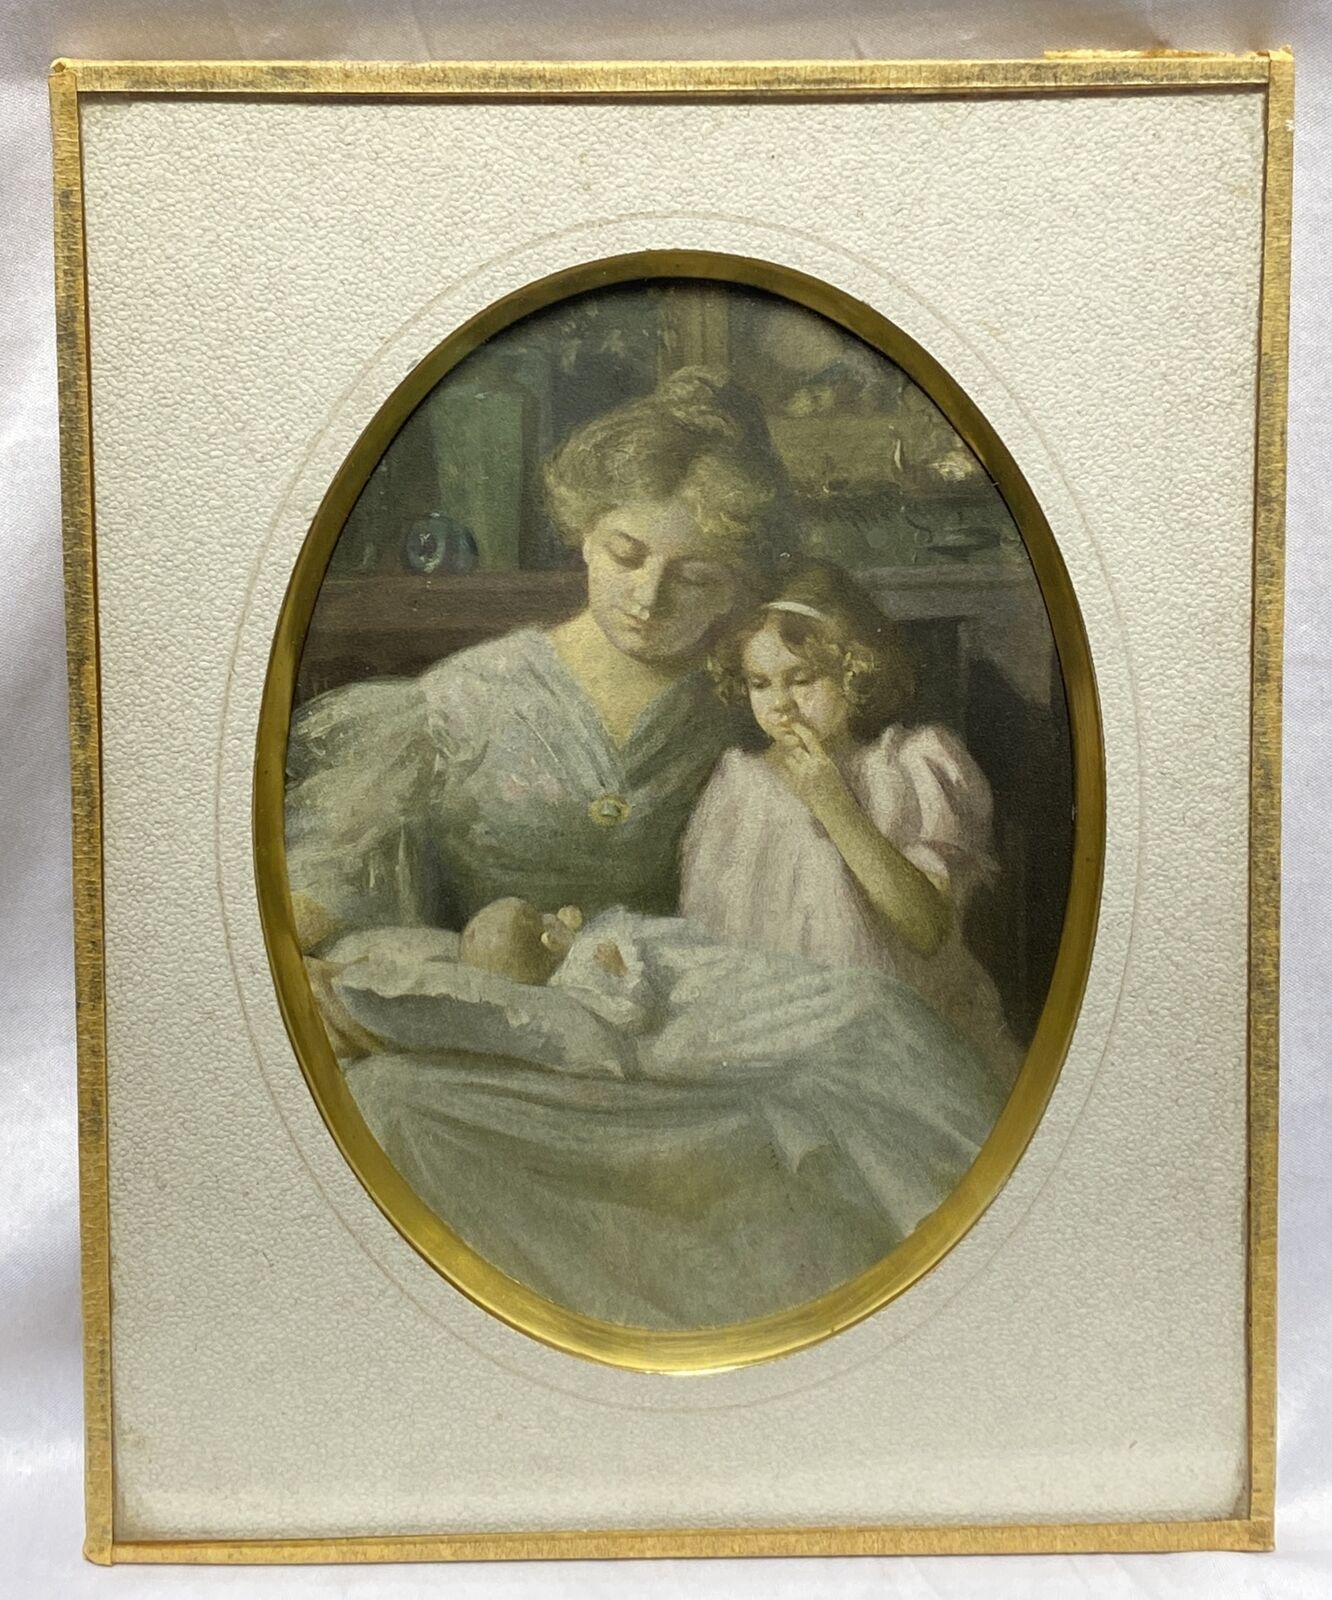 Antique 1800s Hand Painted Portrait Photograph Jamestown NY Original Glass